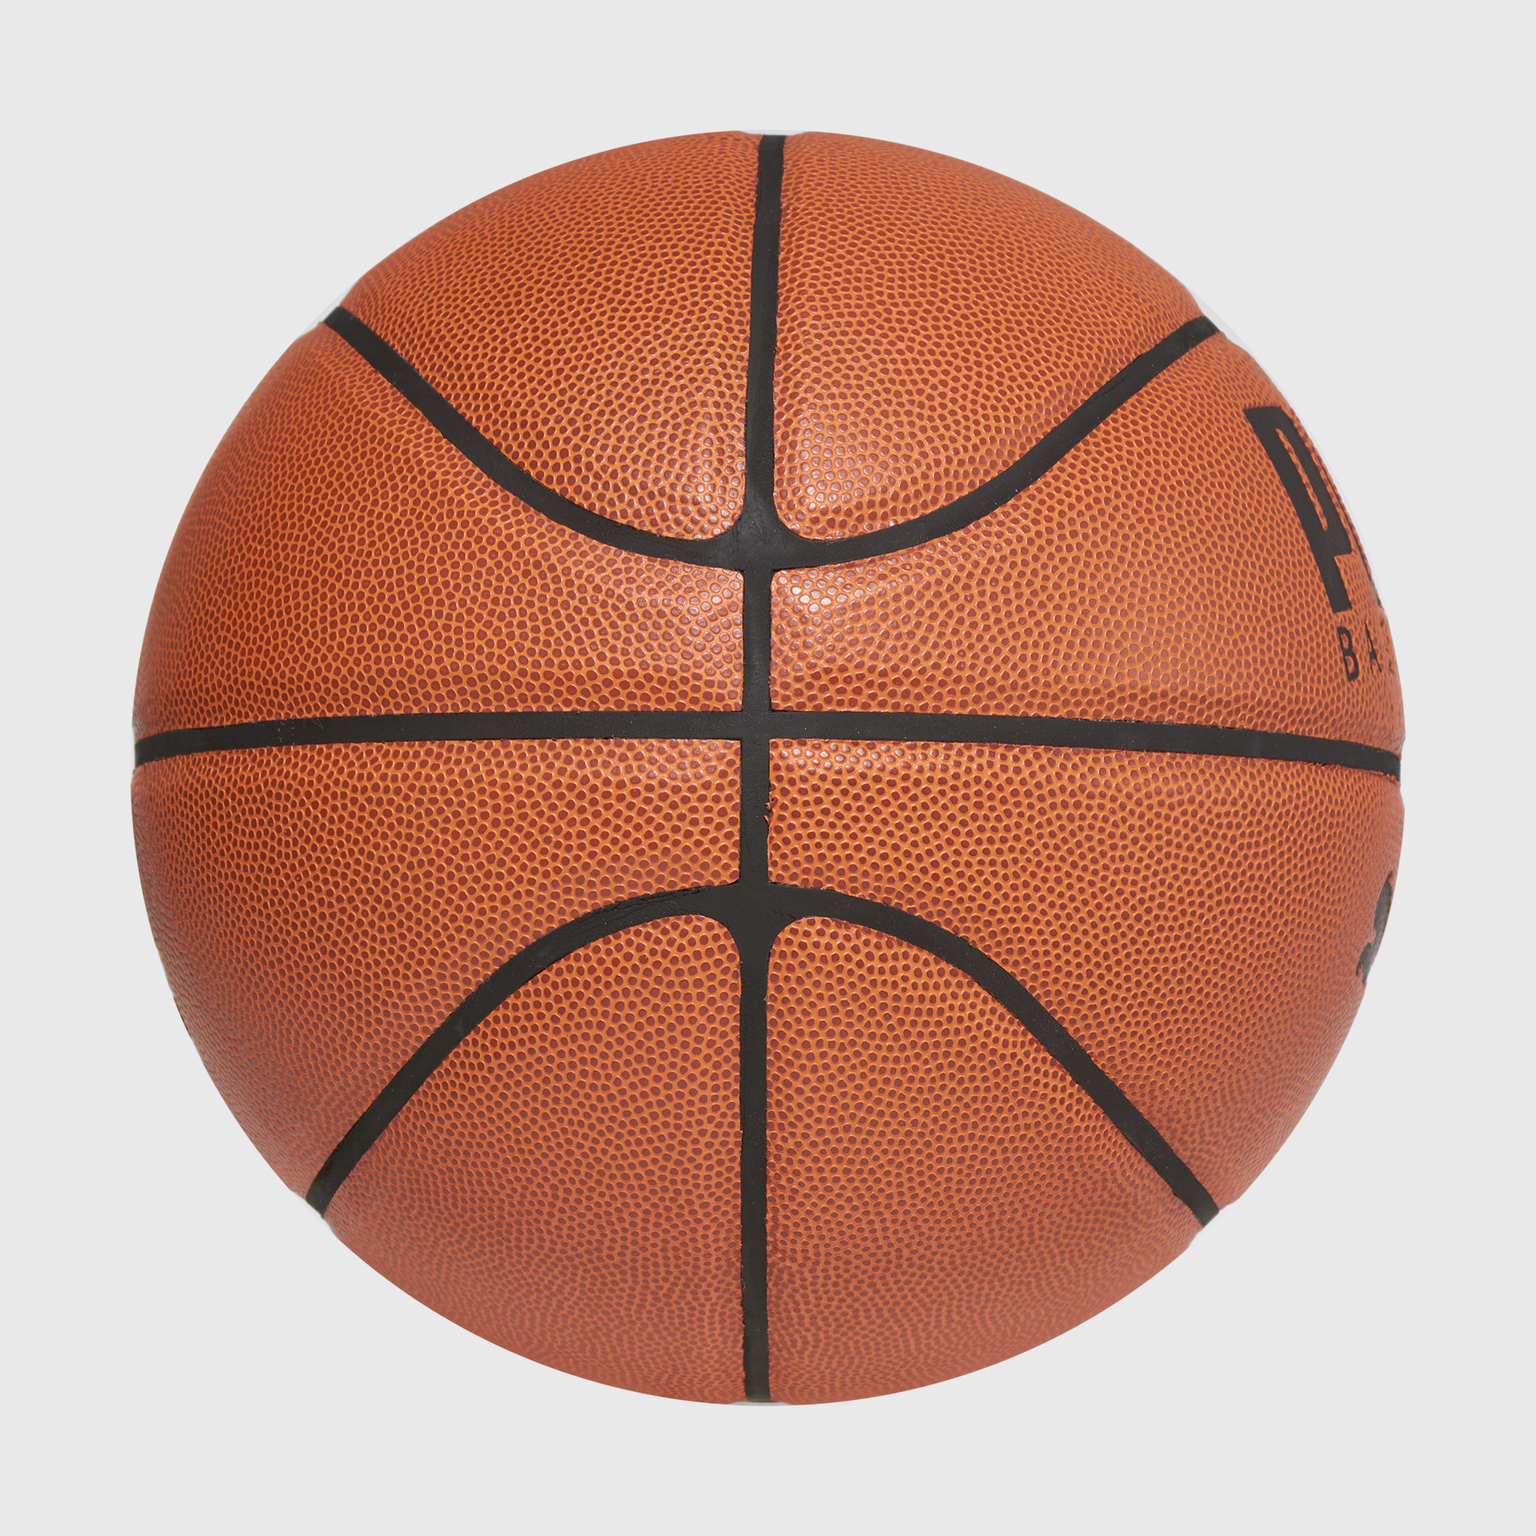 Баскетбольный мяч Puma 08355701